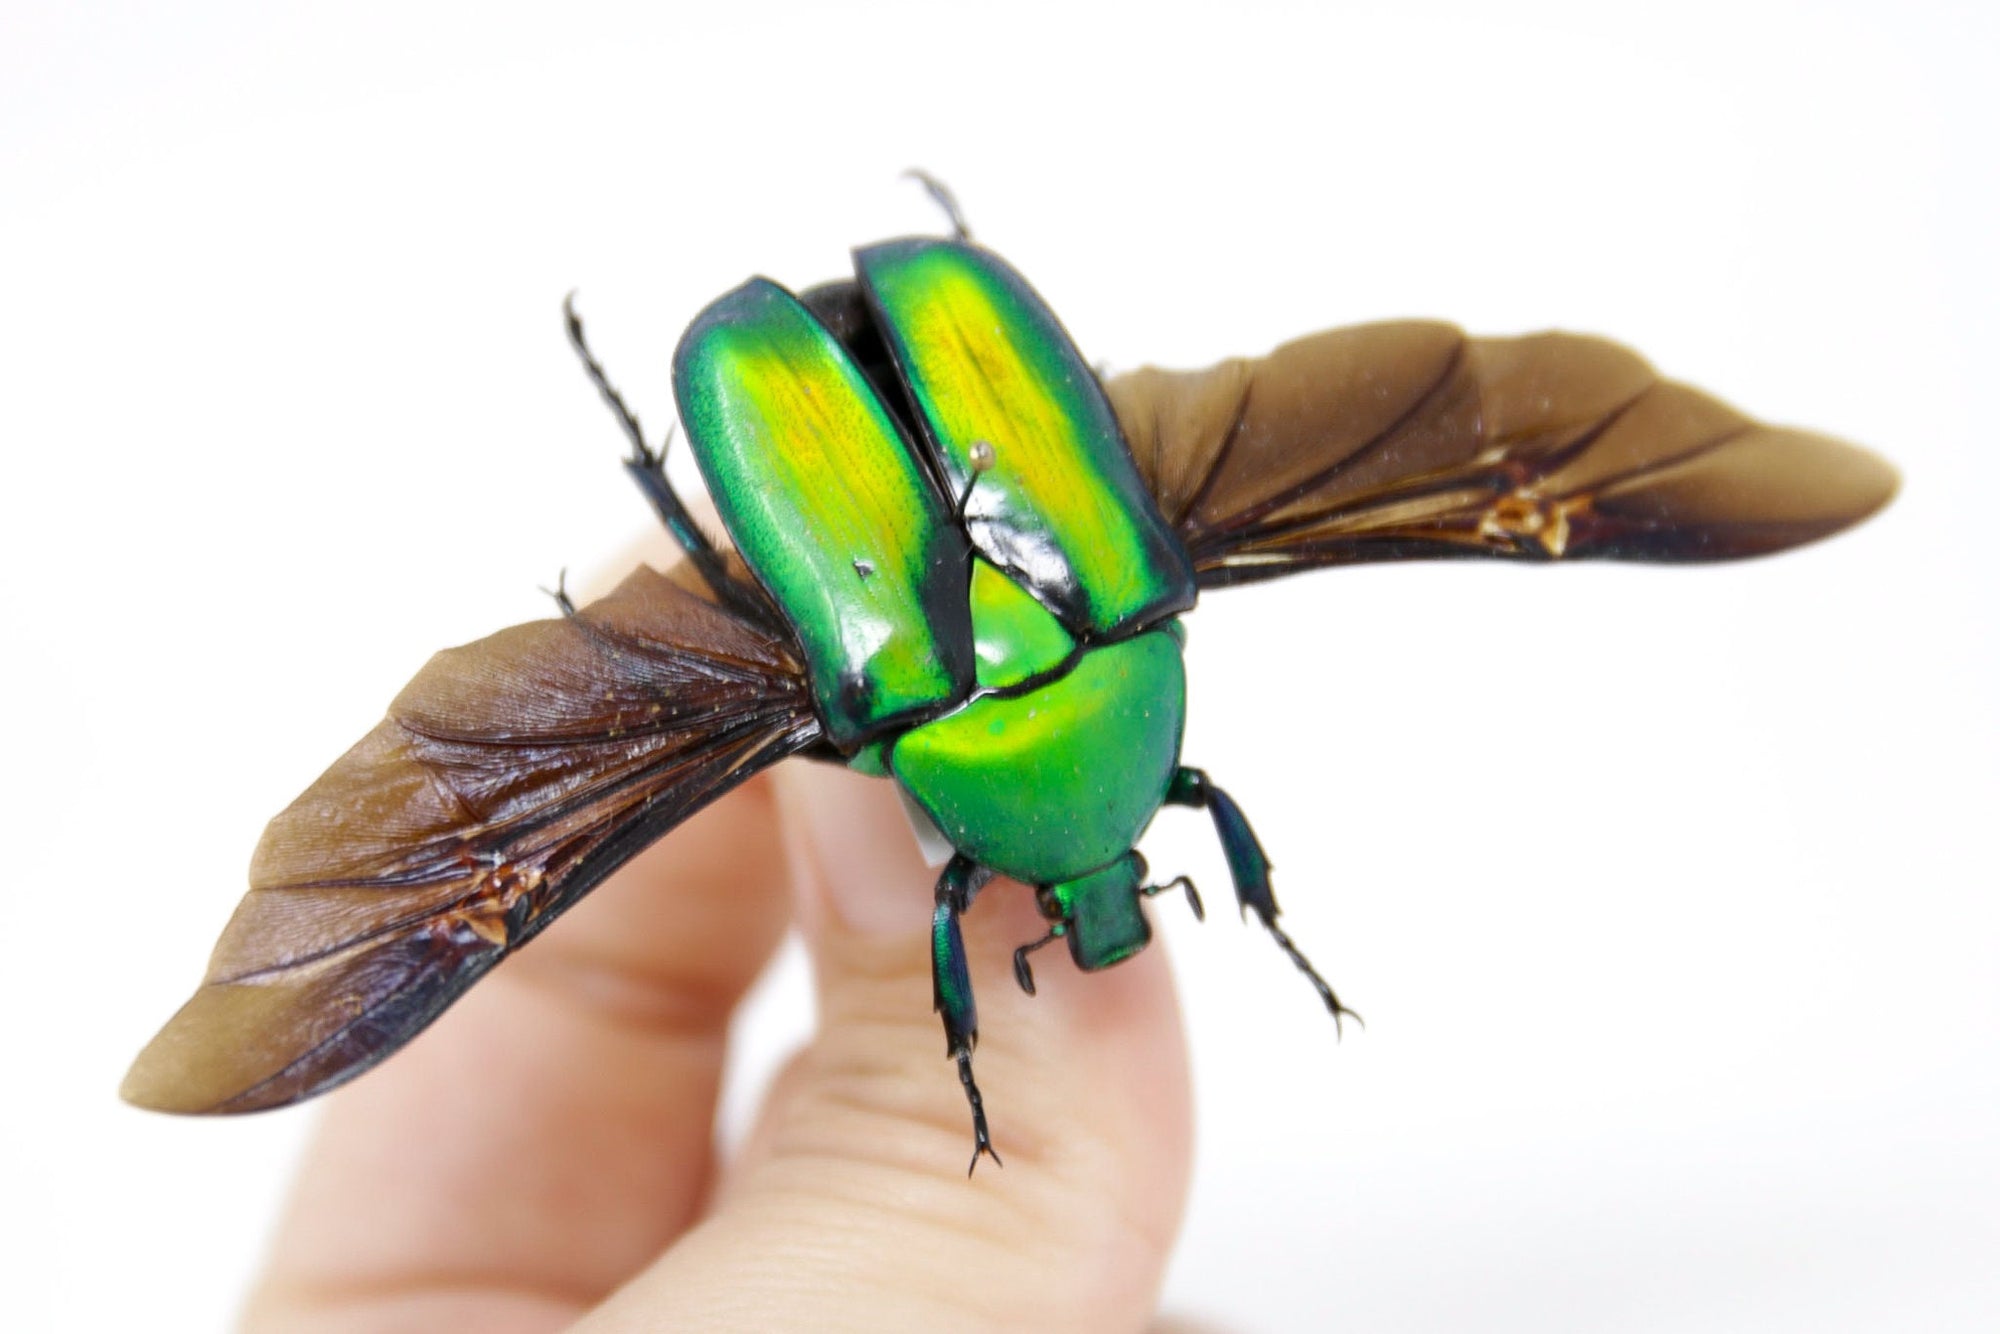 Rhomborrhina gigantea 35.2mm, A1 Real Beetle Pinned Set Specimen, Entomology Taxidermy #OC54